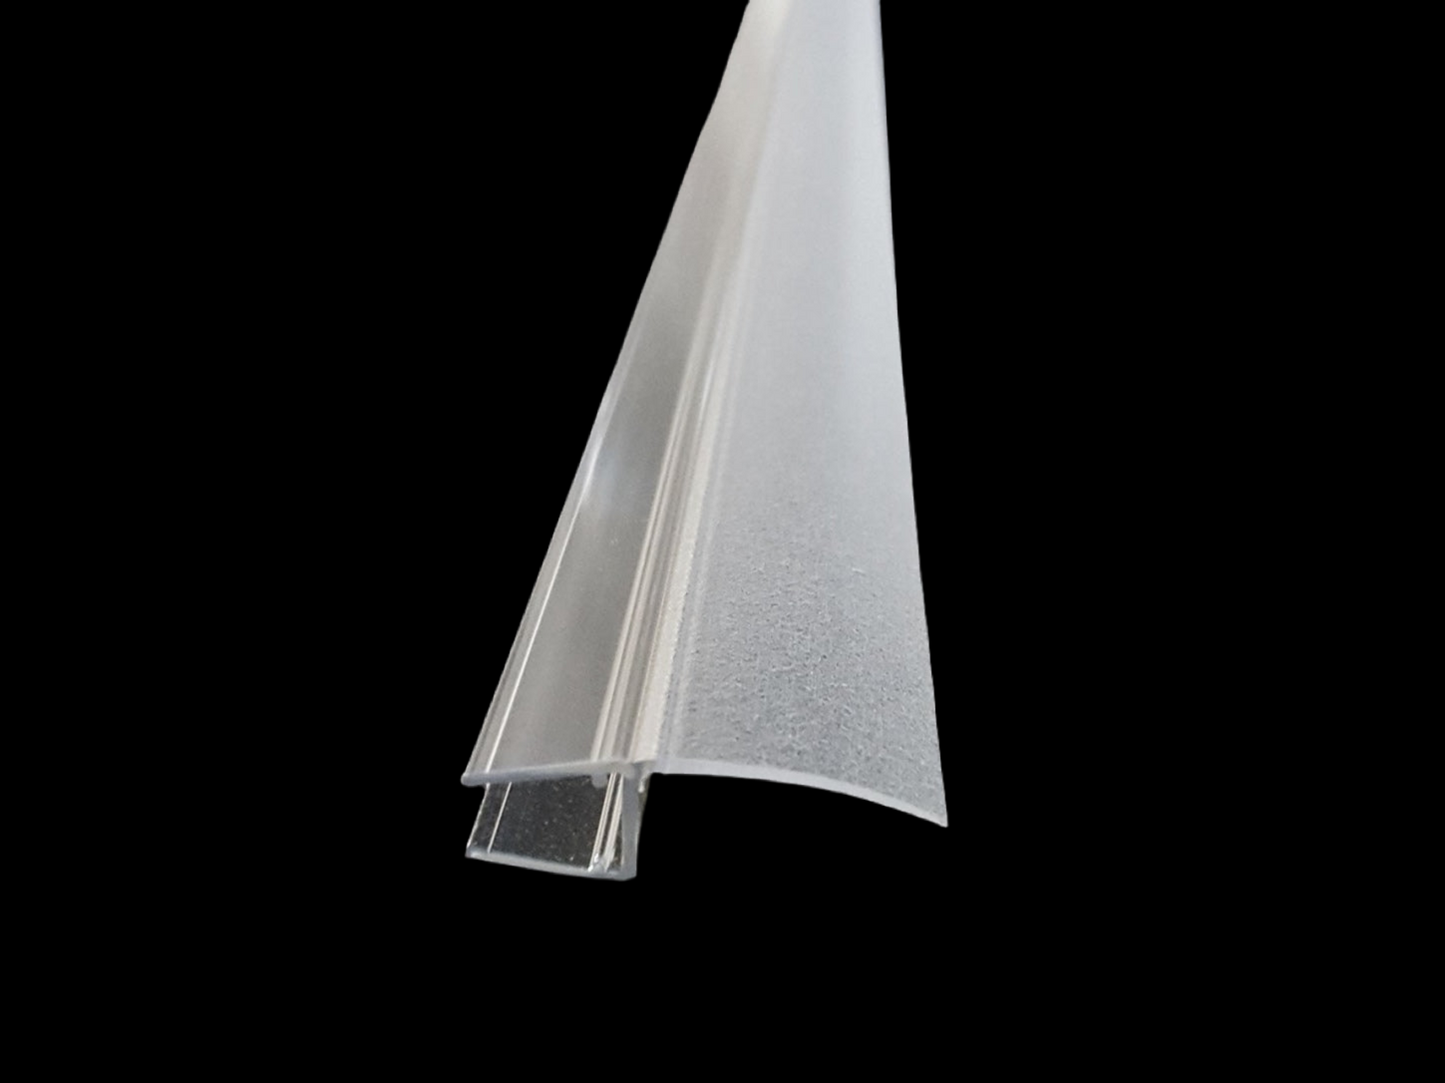 Lippendichtung 180° für fluchtende Türen, mit langer Dichtfahne, für Lücken von 13 - 23 mm, Art.Nr. 5091